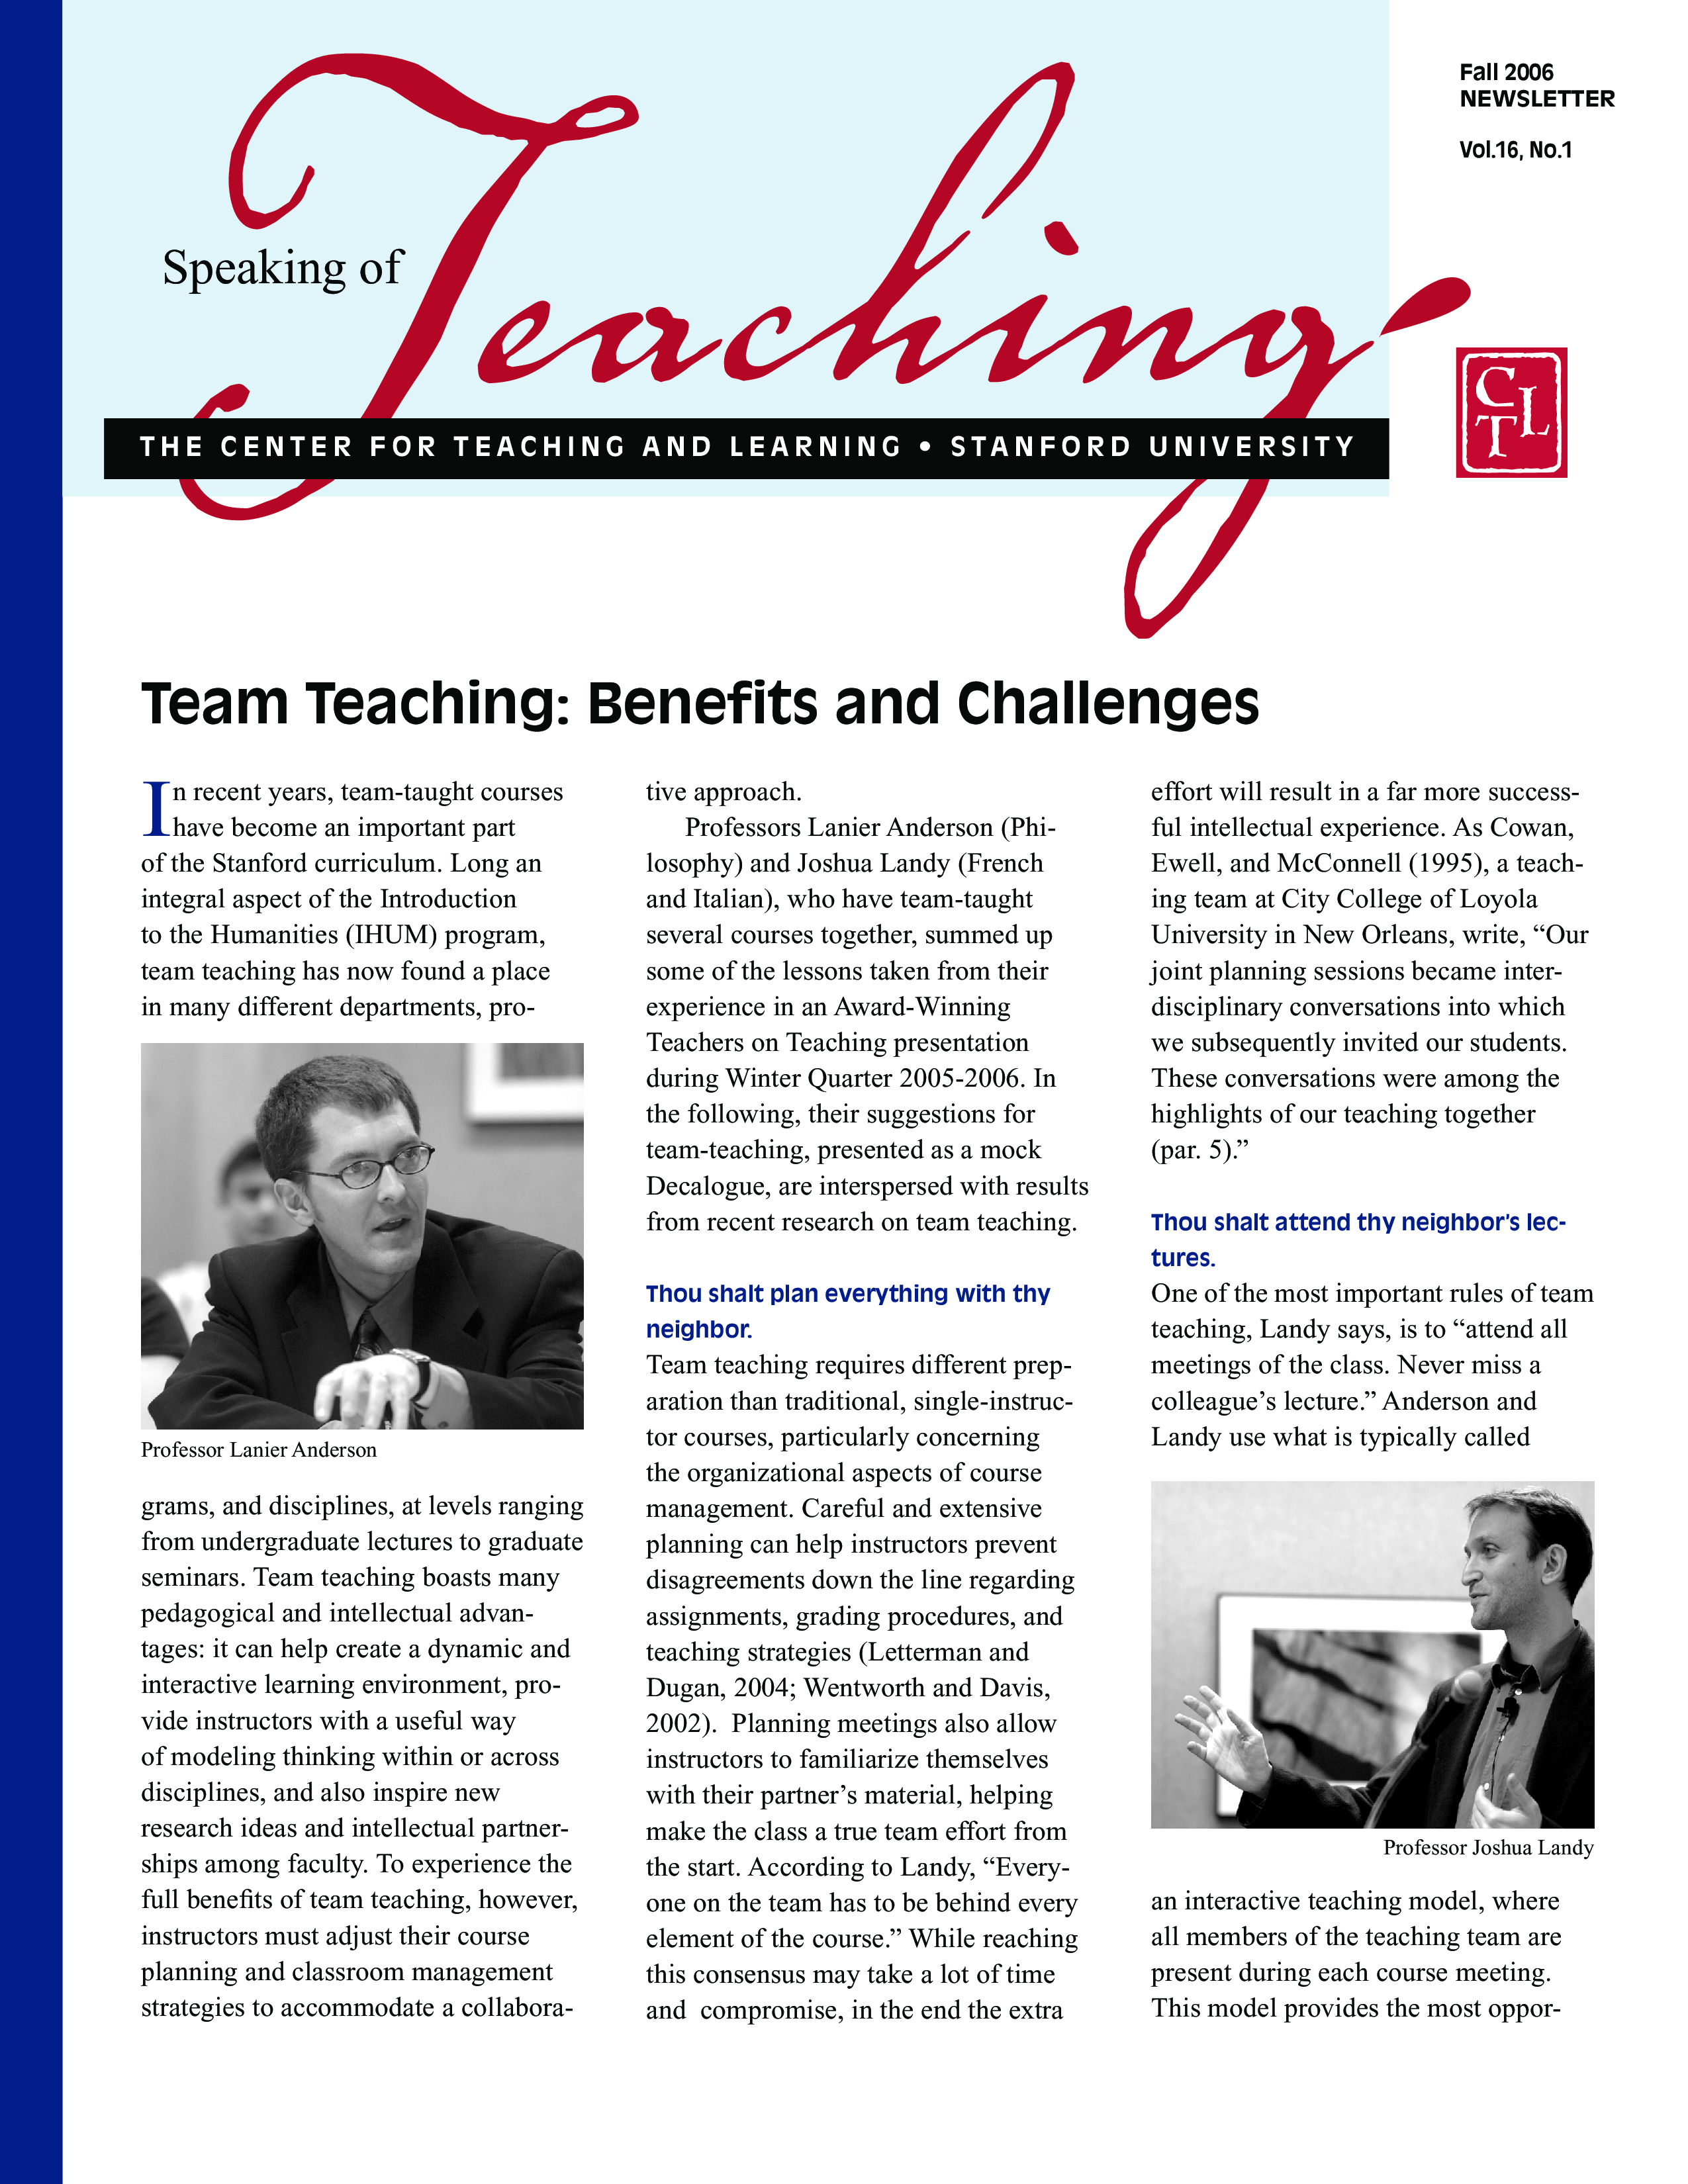 Newsletters For Teachers 模板